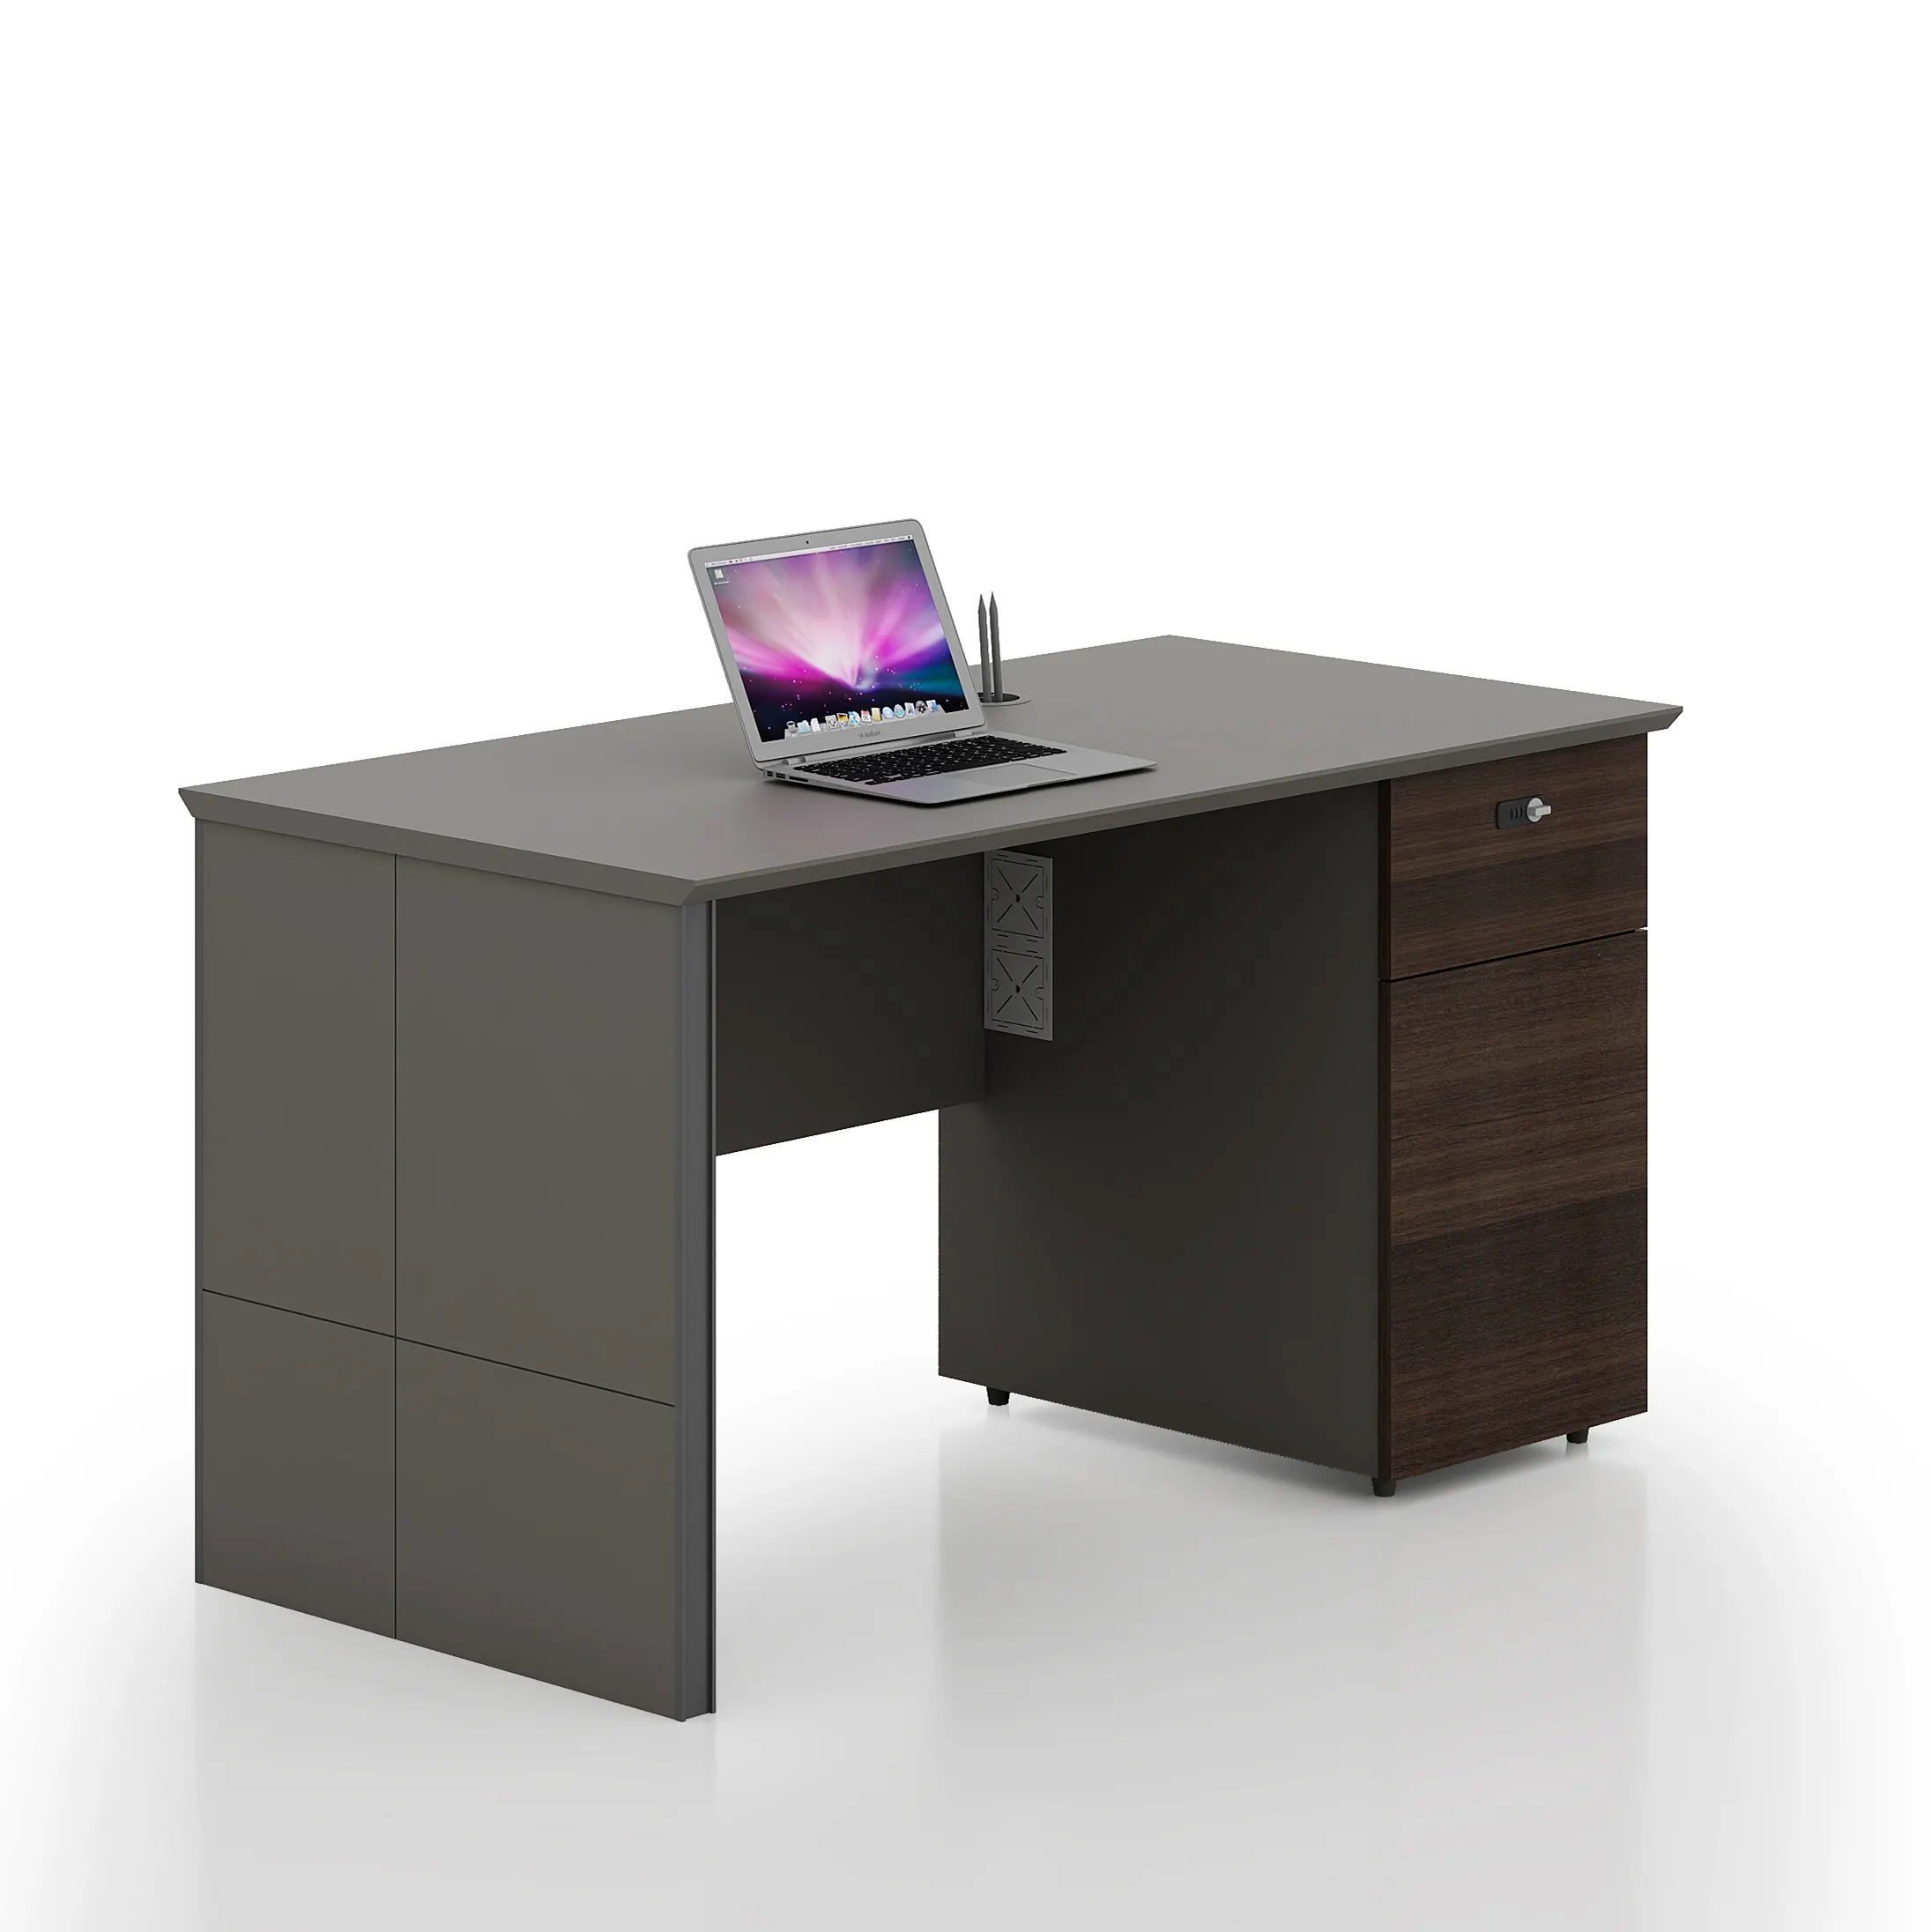 โต๊ะเมลามีน MDF เฟอร์นิเจอร์สำนักงานมืออาชีพโต๊ะผู้บริหารโต๊ะคอมพิวเตอร์เชิงพาณิชย์ปรับแต่งได้